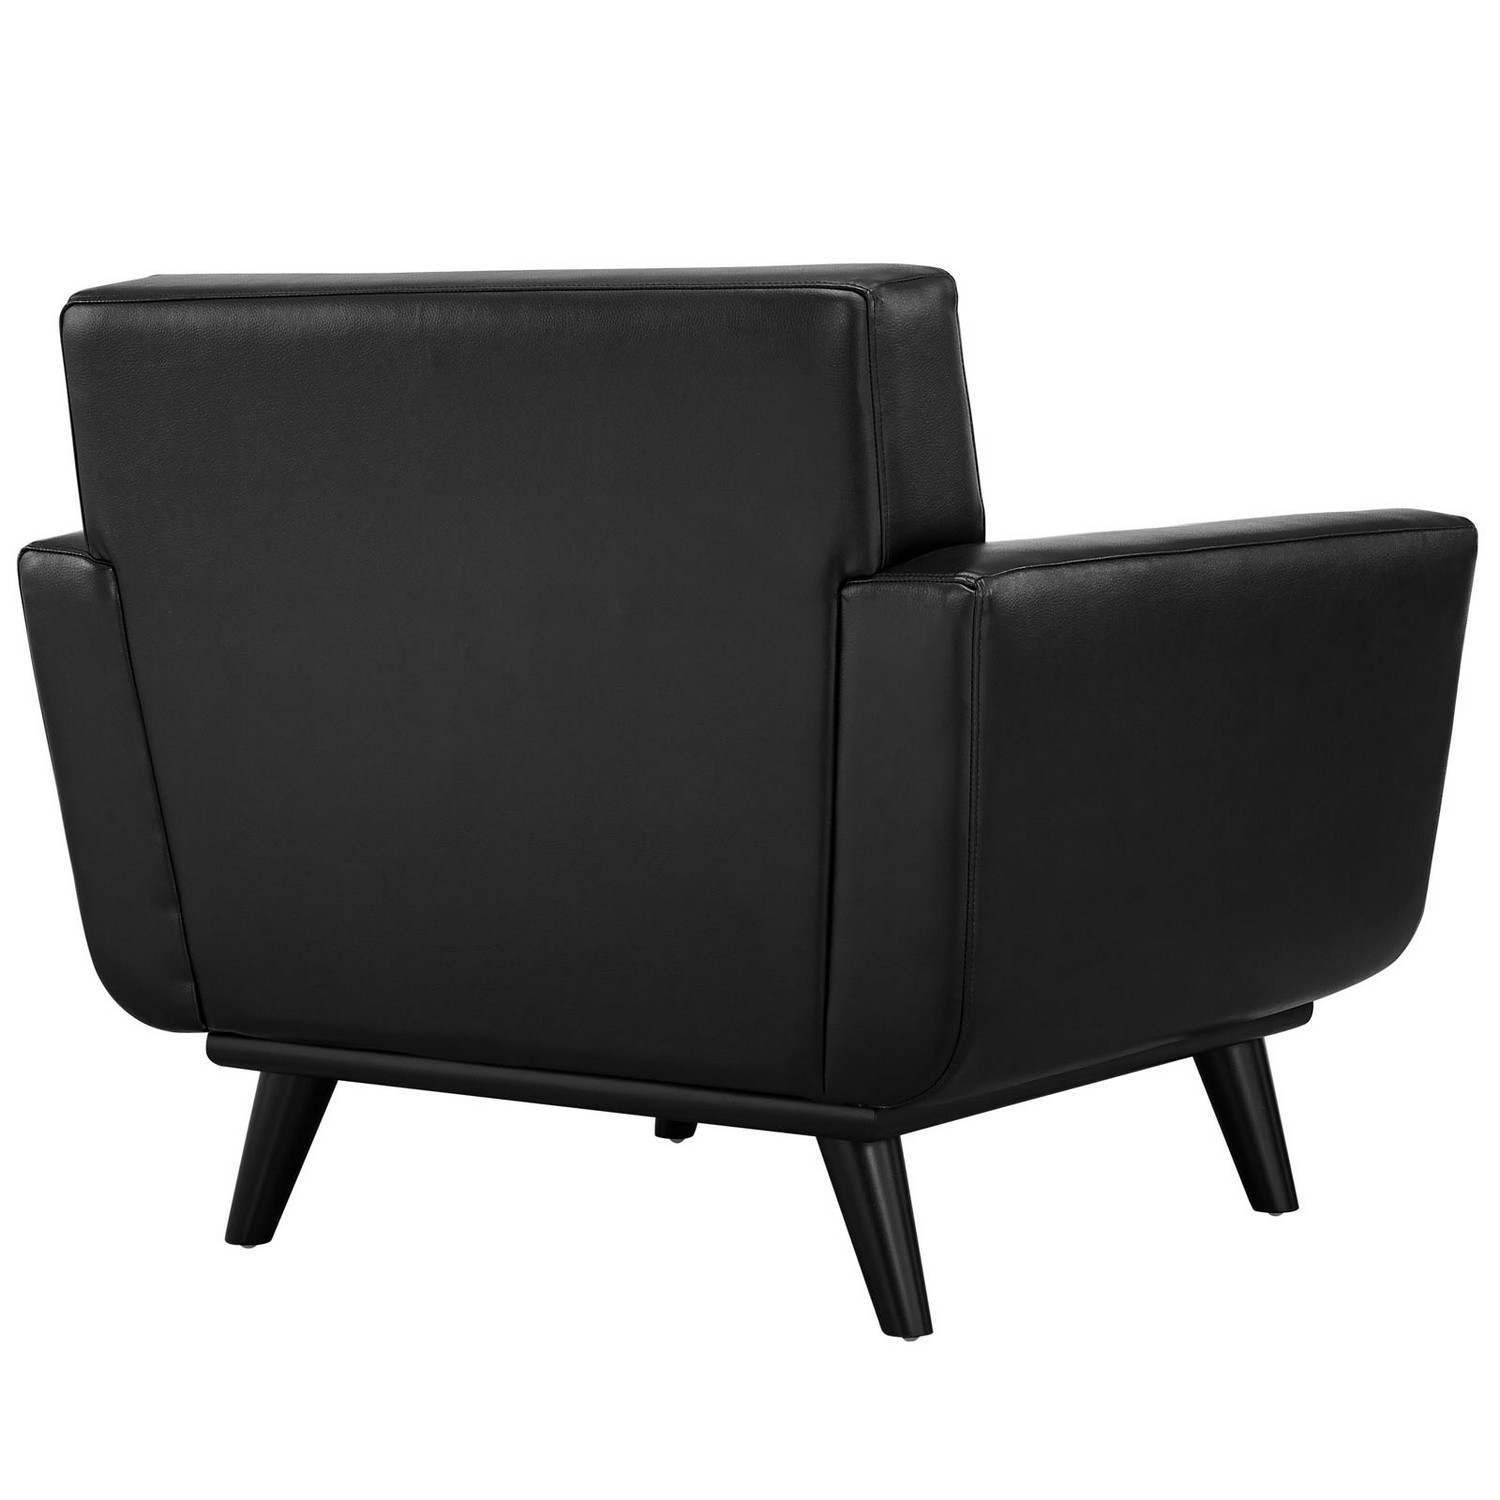 Modway Engage Leather Sofa Set - Black